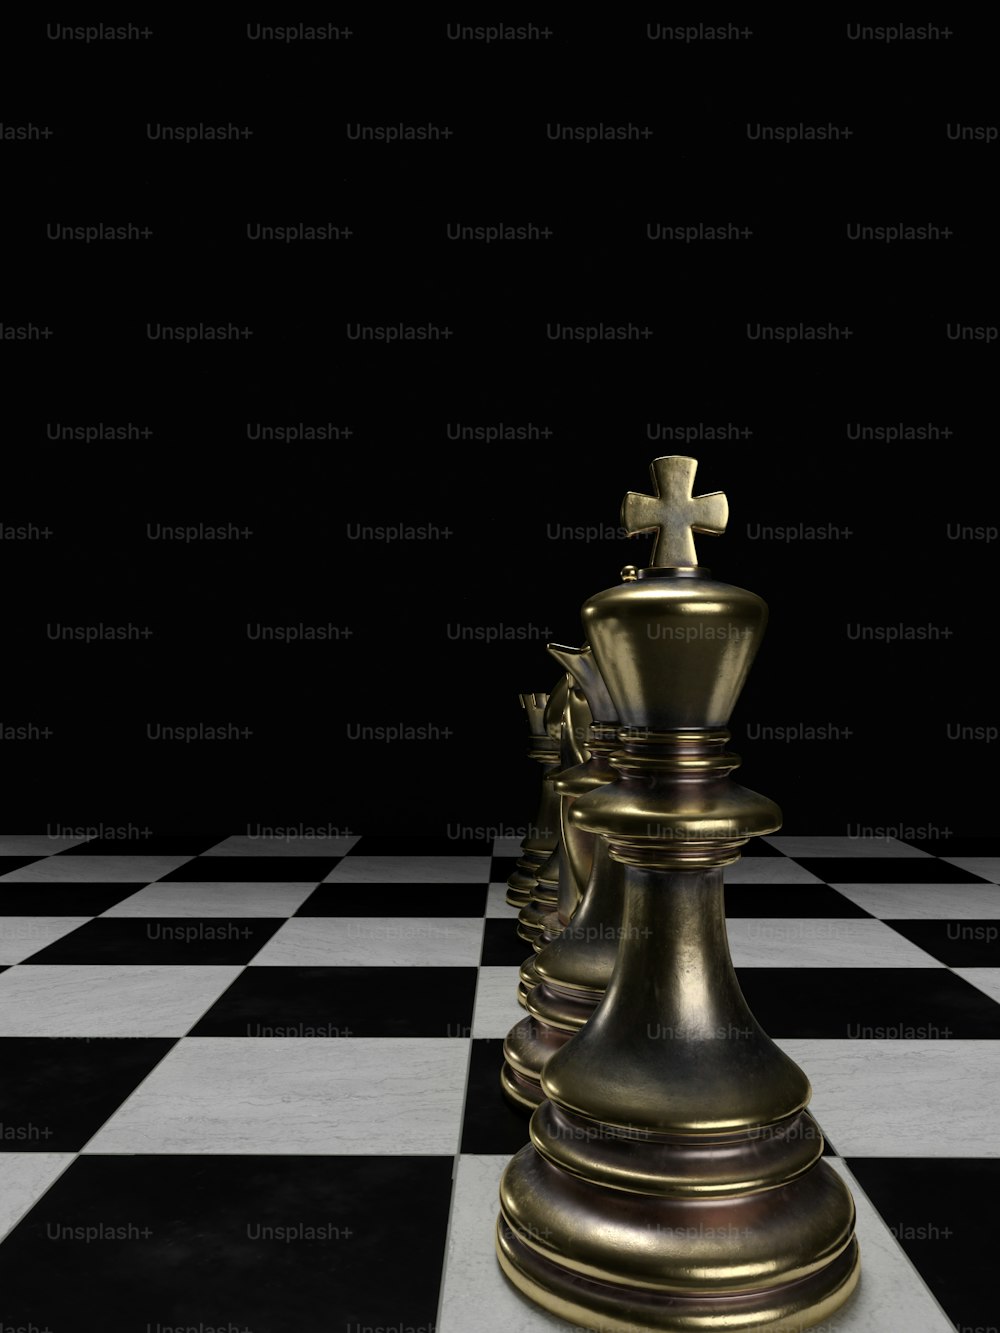 eine goldene Schachfigur auf schwarz-weiß kariertem Boden